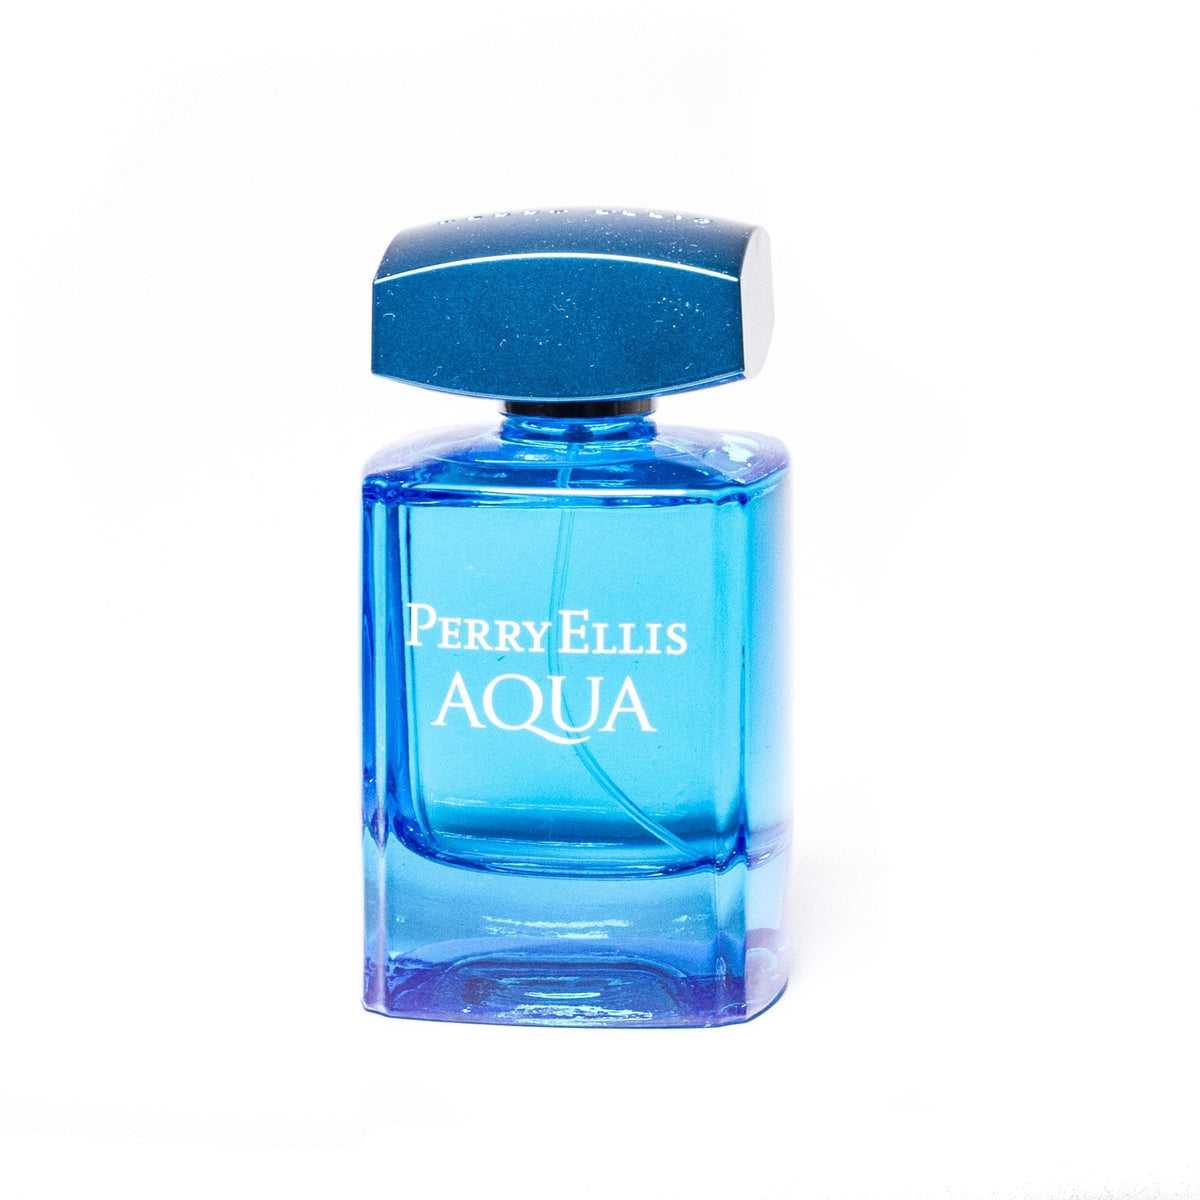 Aqua Eau de Toilette Spray for Men by Perry Ellis 3.4 oz.